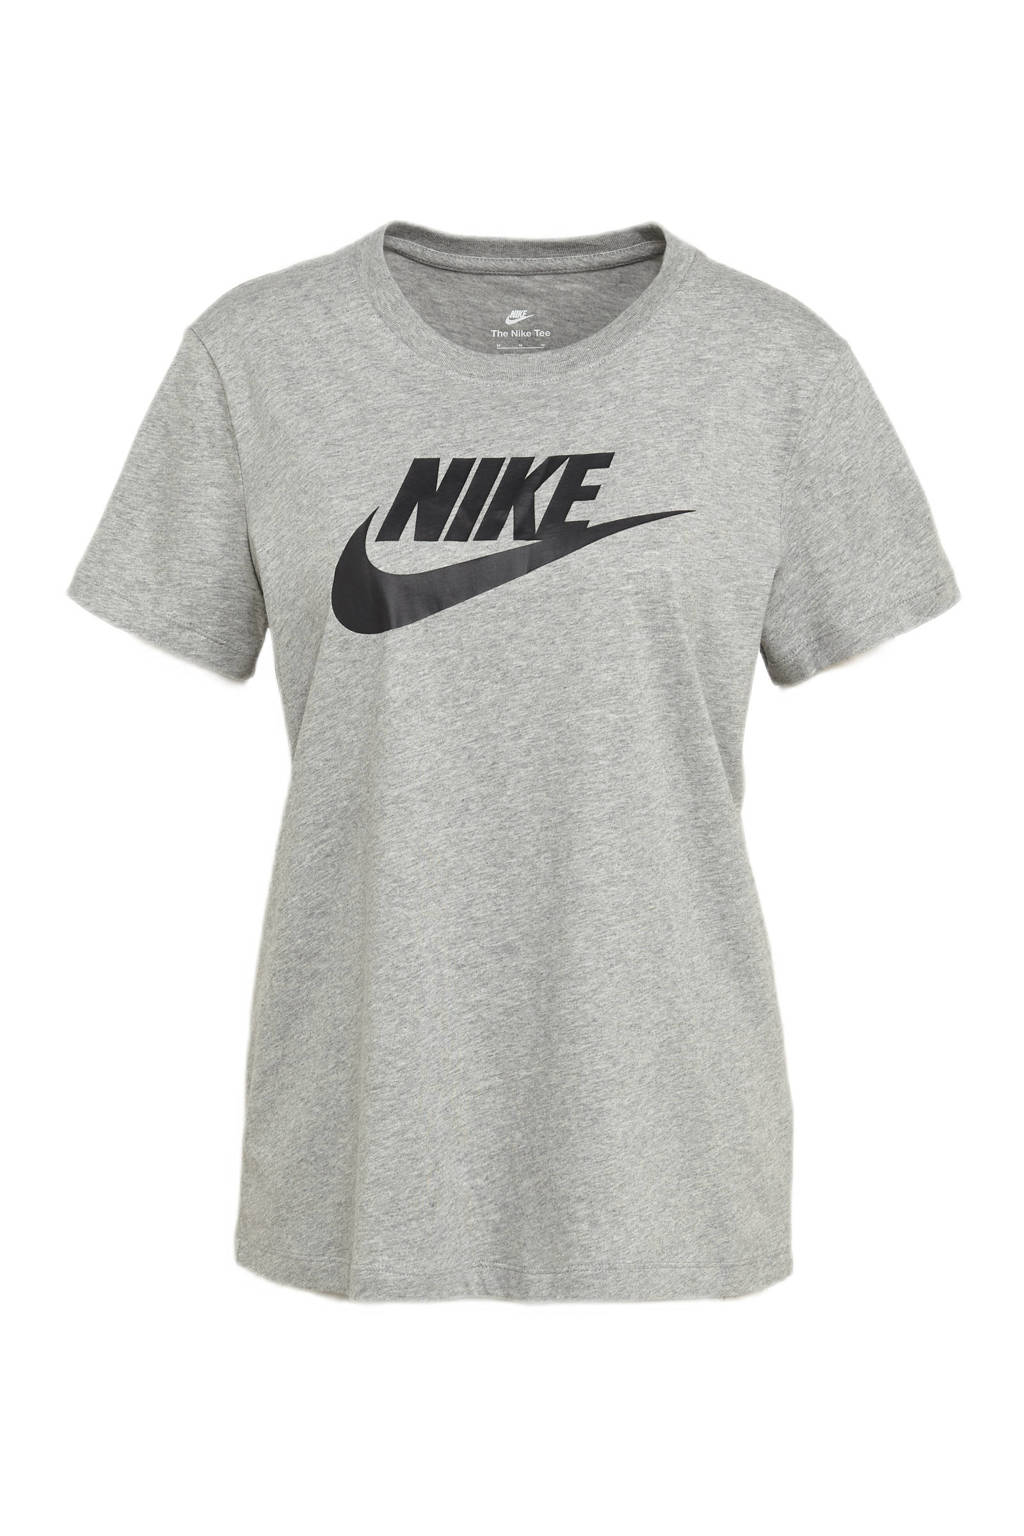 Nike T-shirt met logo grijs, Grijs